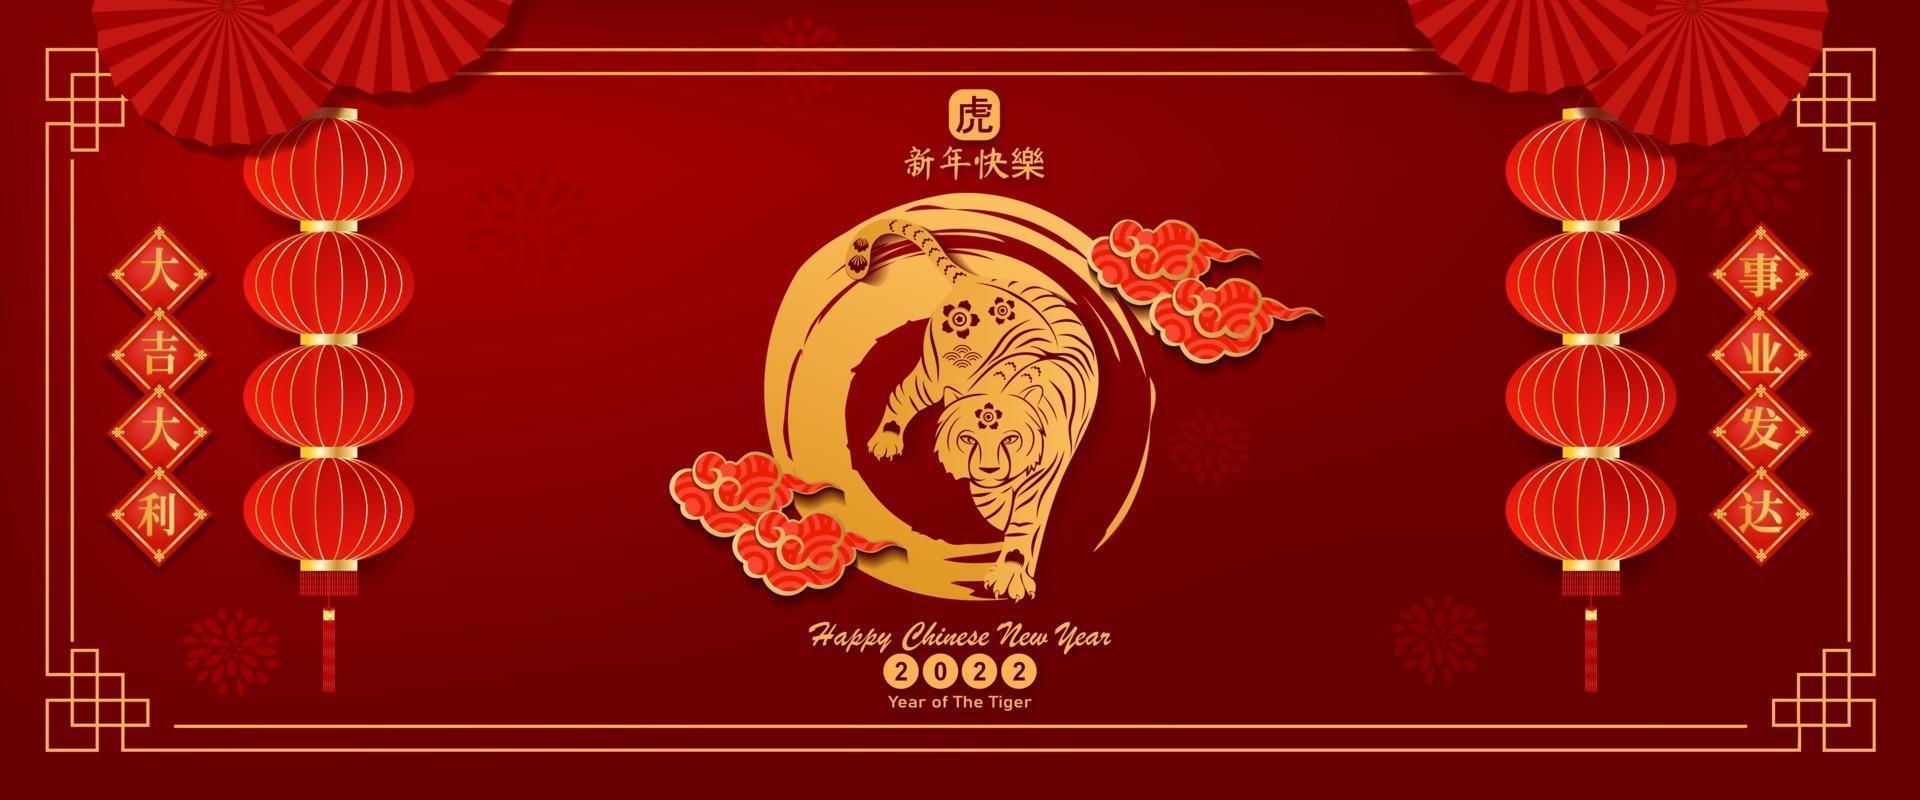 banner felice anno nuovo cinese 2022 anno della tigre carta tagliata. vettore